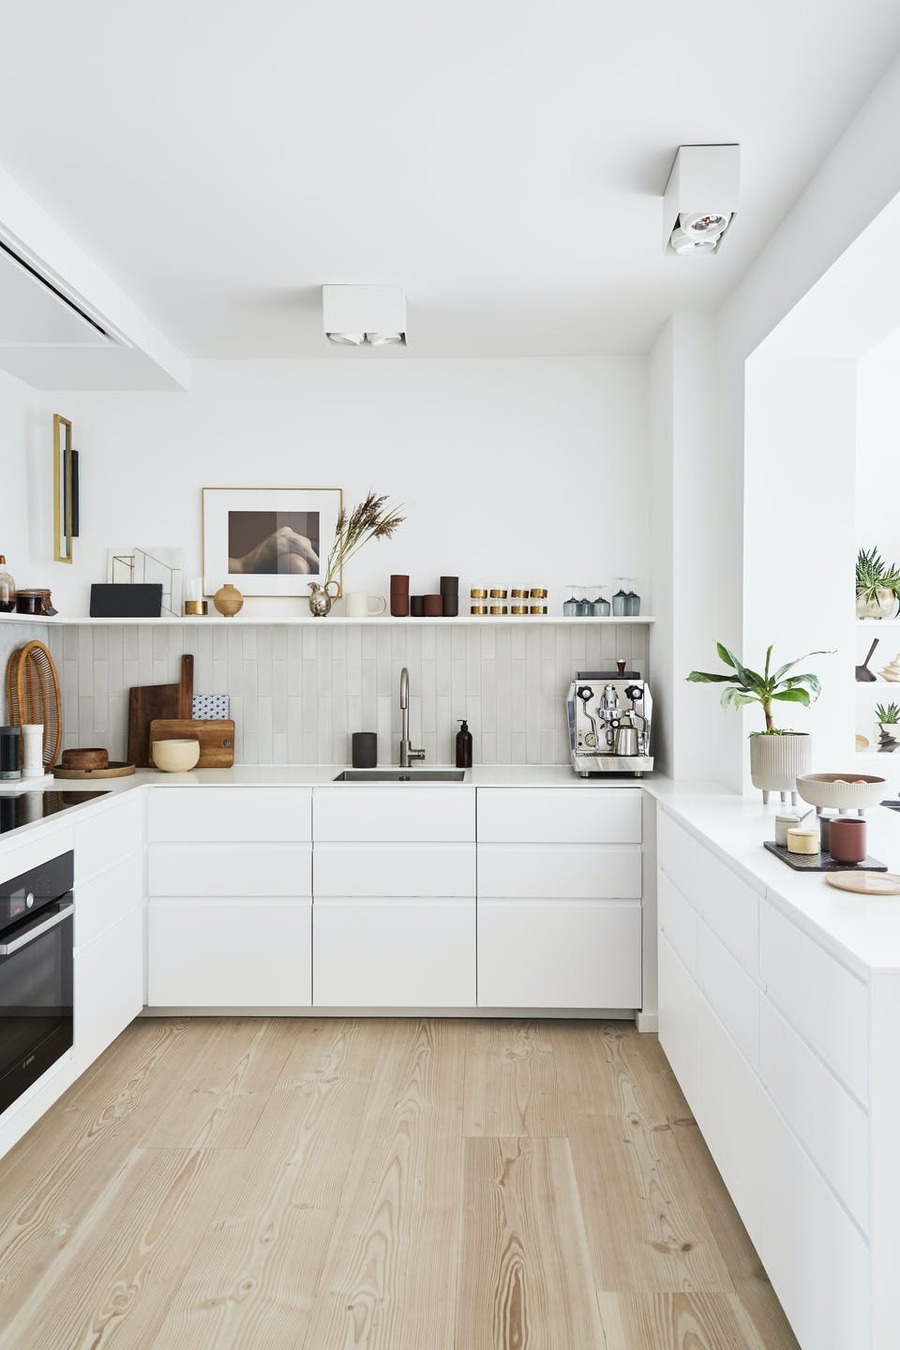 Una cocina con paredes y muebles blancos se complementa con electrodomésticos y decoraciones en tonos madera y métalicos.